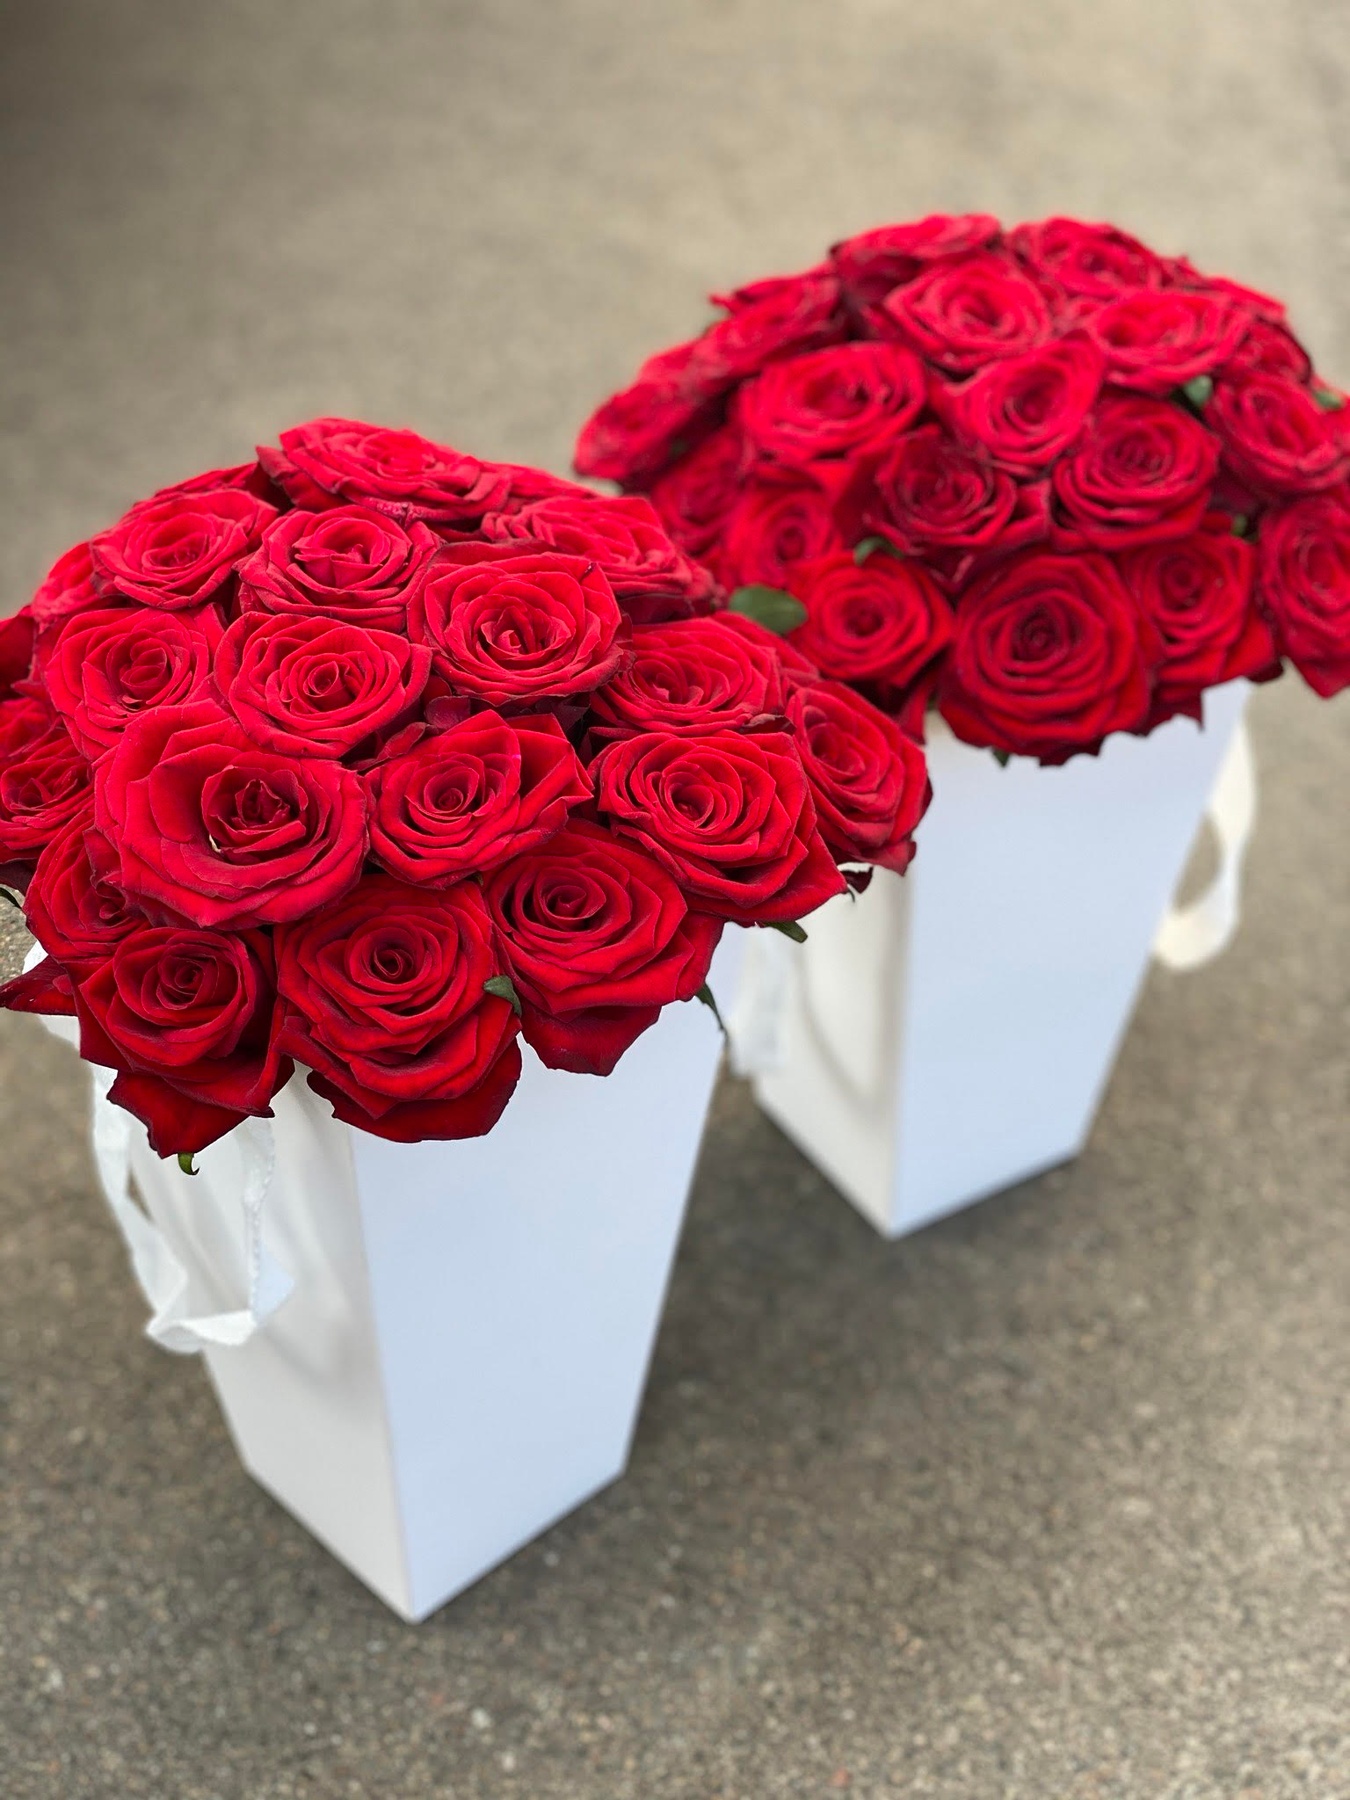 Трапециевидная коробка с красными розами